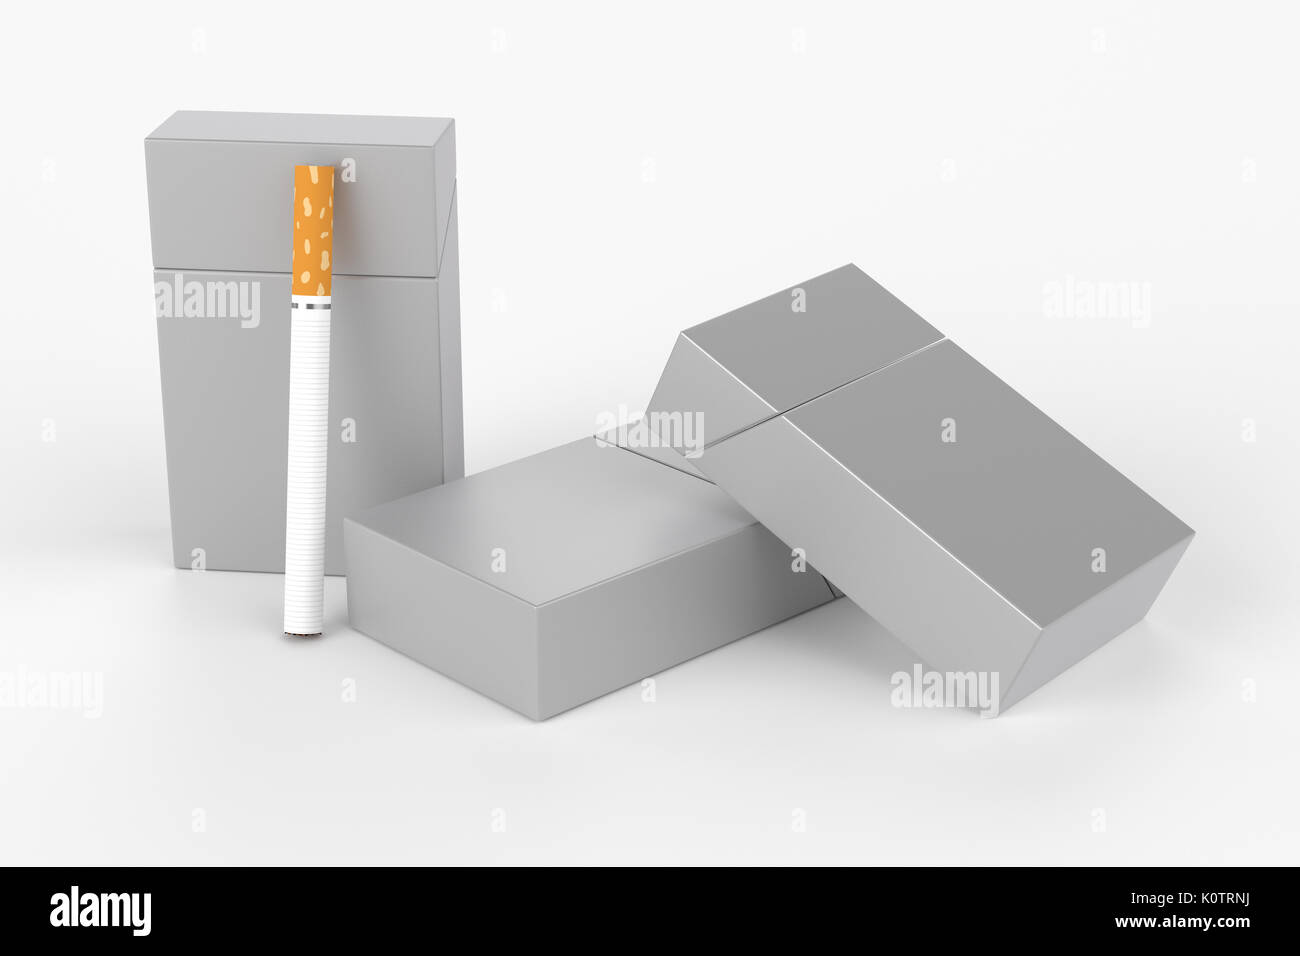 3D Render composición de tres cajas de cigarrillos king size o paquetes de cigarrillos con sobre un fondo blanco con sombra. Plantilla para su diseño. Foto de stock